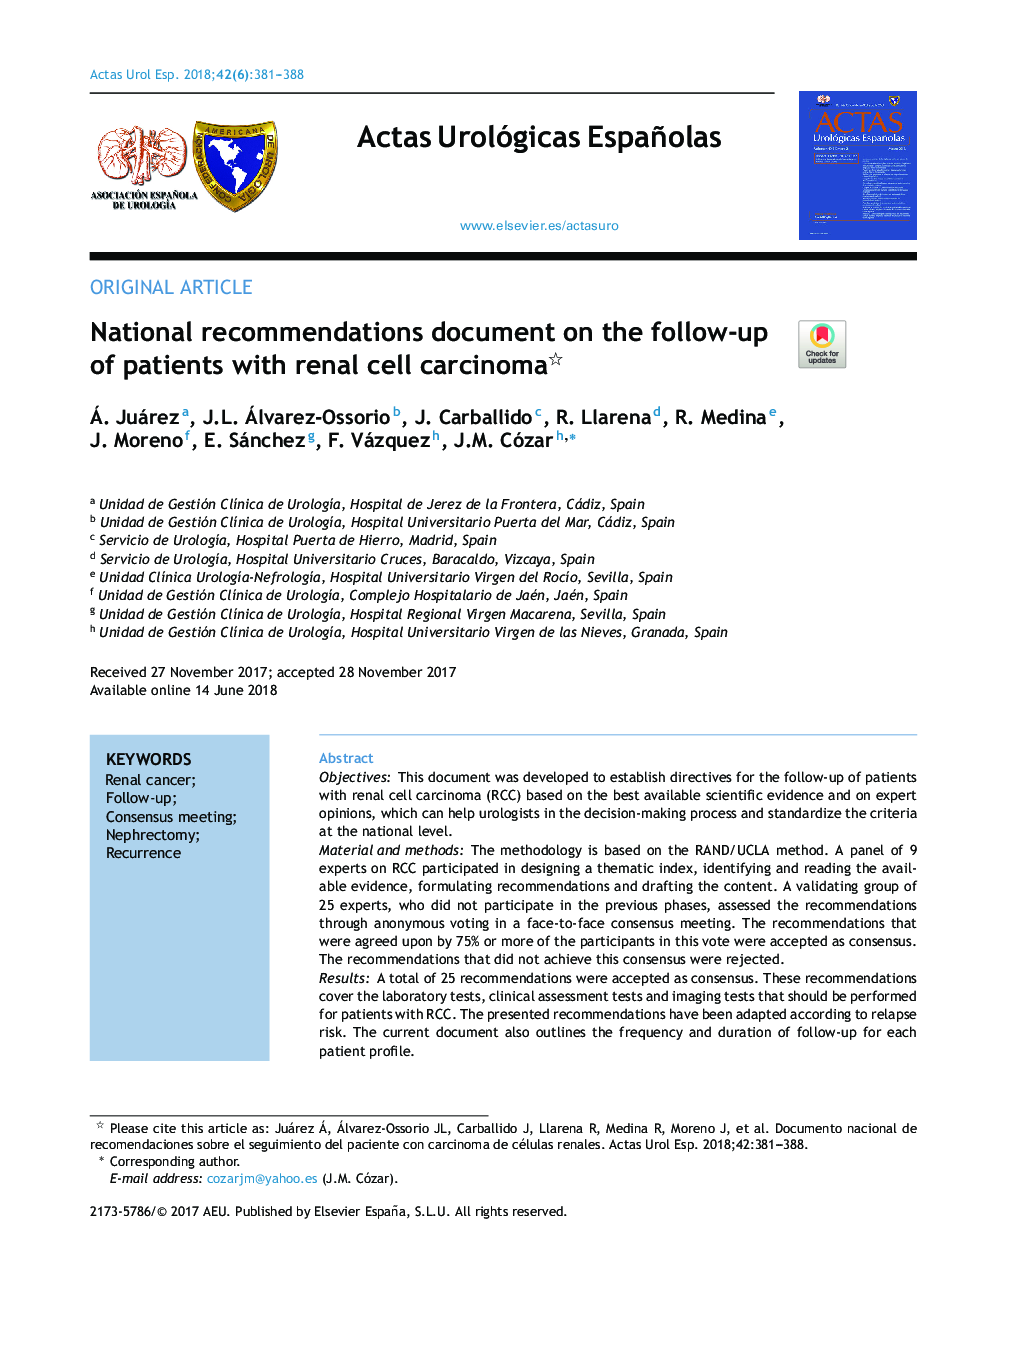 سند توصیه ملی در مورد پیگیری بیماران مبتلا به کارسینوم سلولی کلیه 